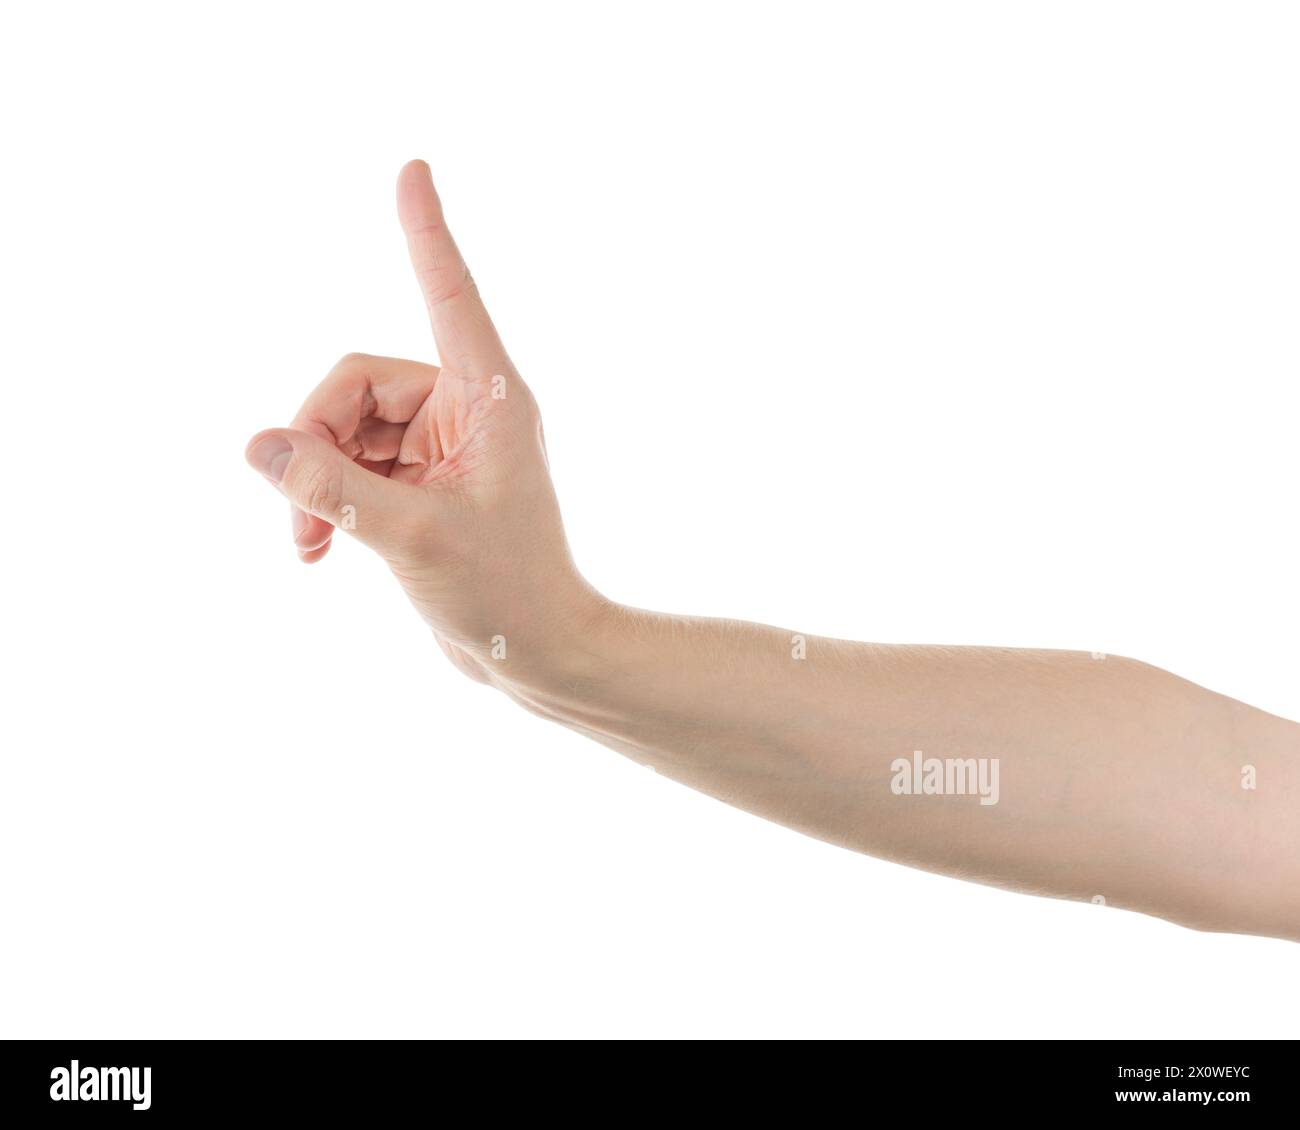 La mano fa un gesto con il dito indice rivolto verso l'alto. Il polso si piega mentre il pollice e le altre dita si rilassano. L'unghia è ben curata Foto Stock